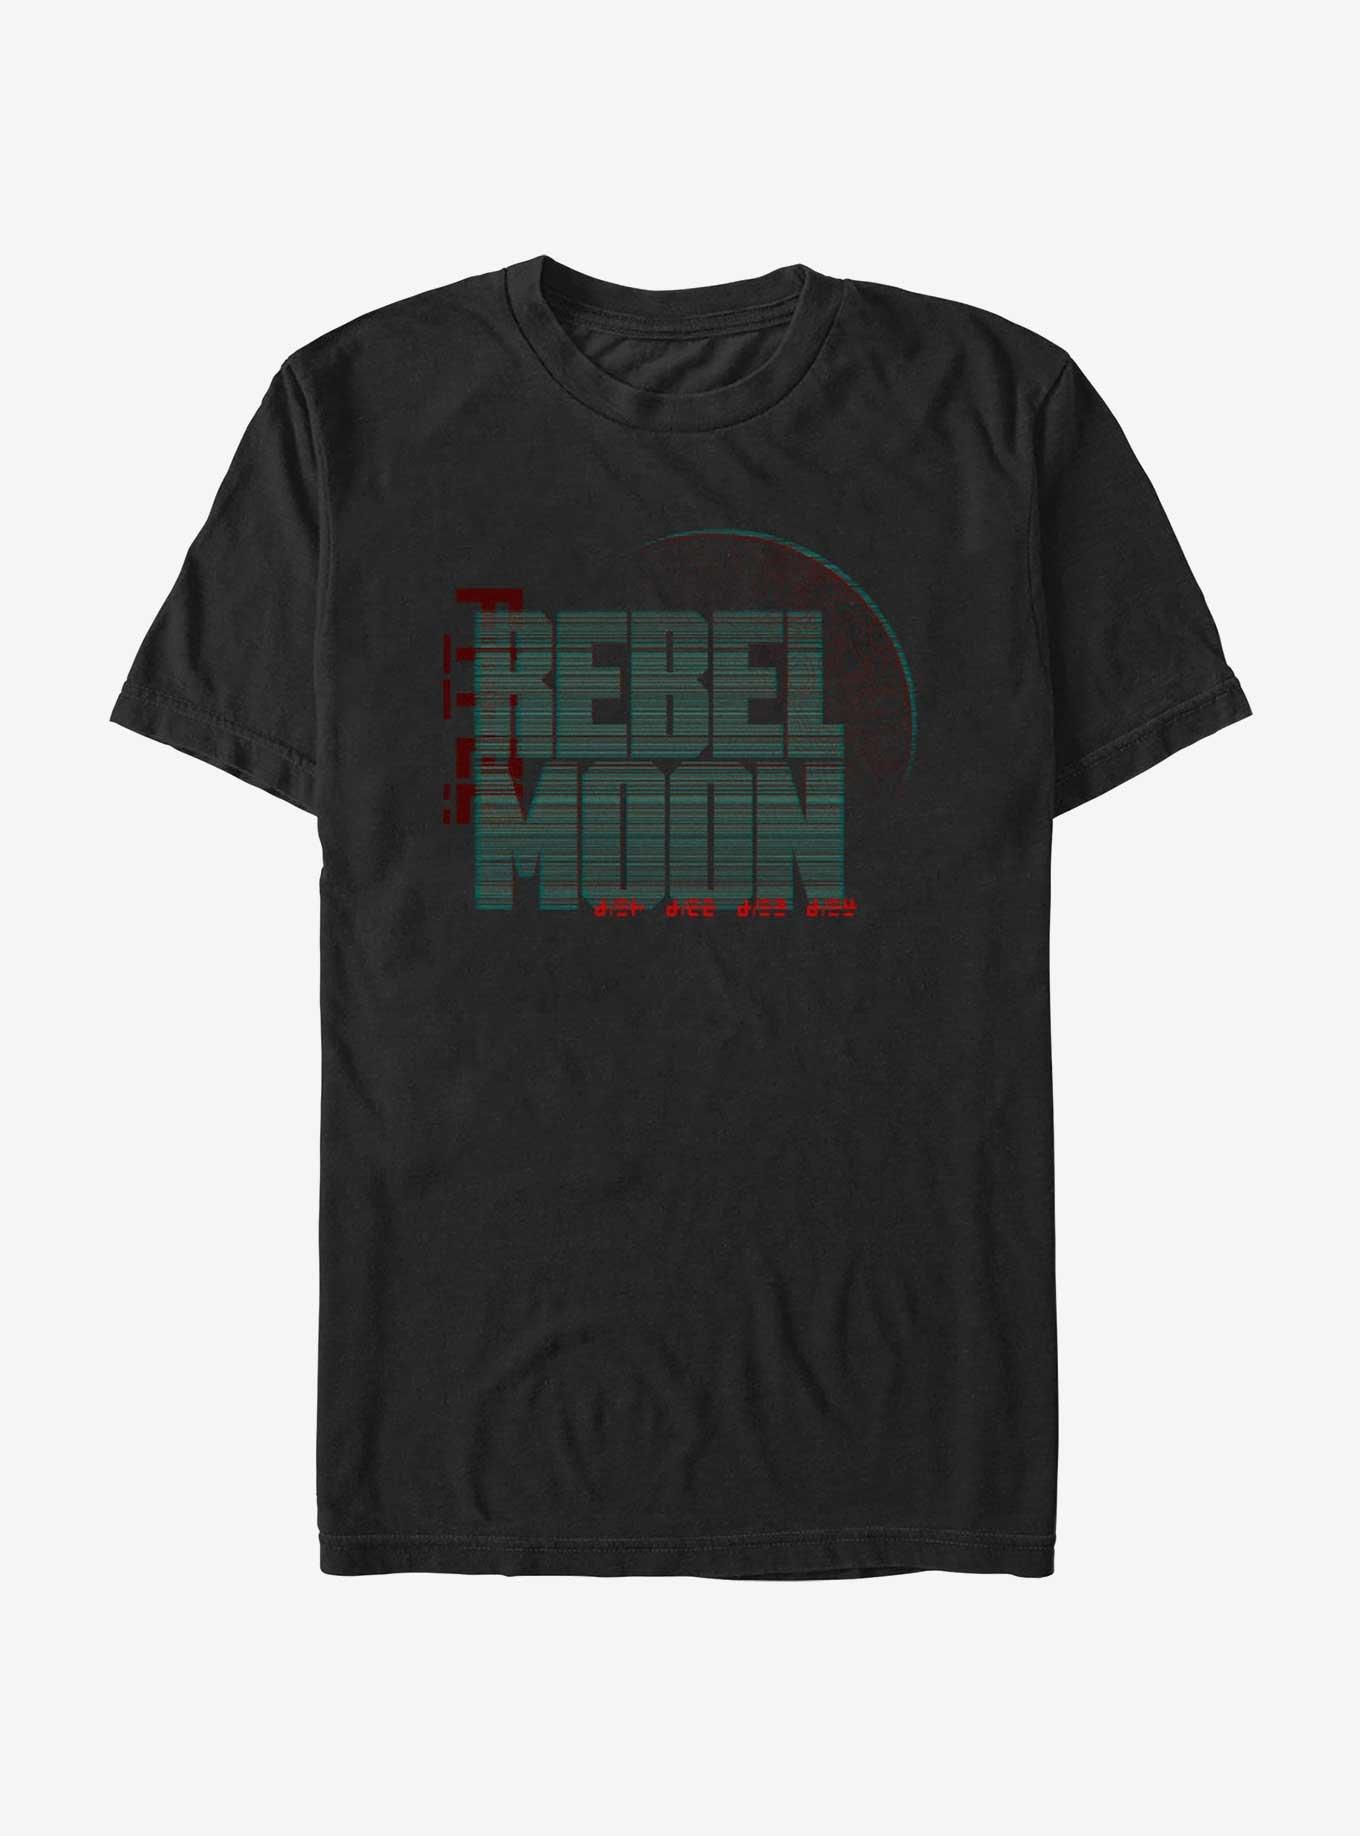 Rebel Moon Symbols Logo T-Shirt, BLACK, hi-res